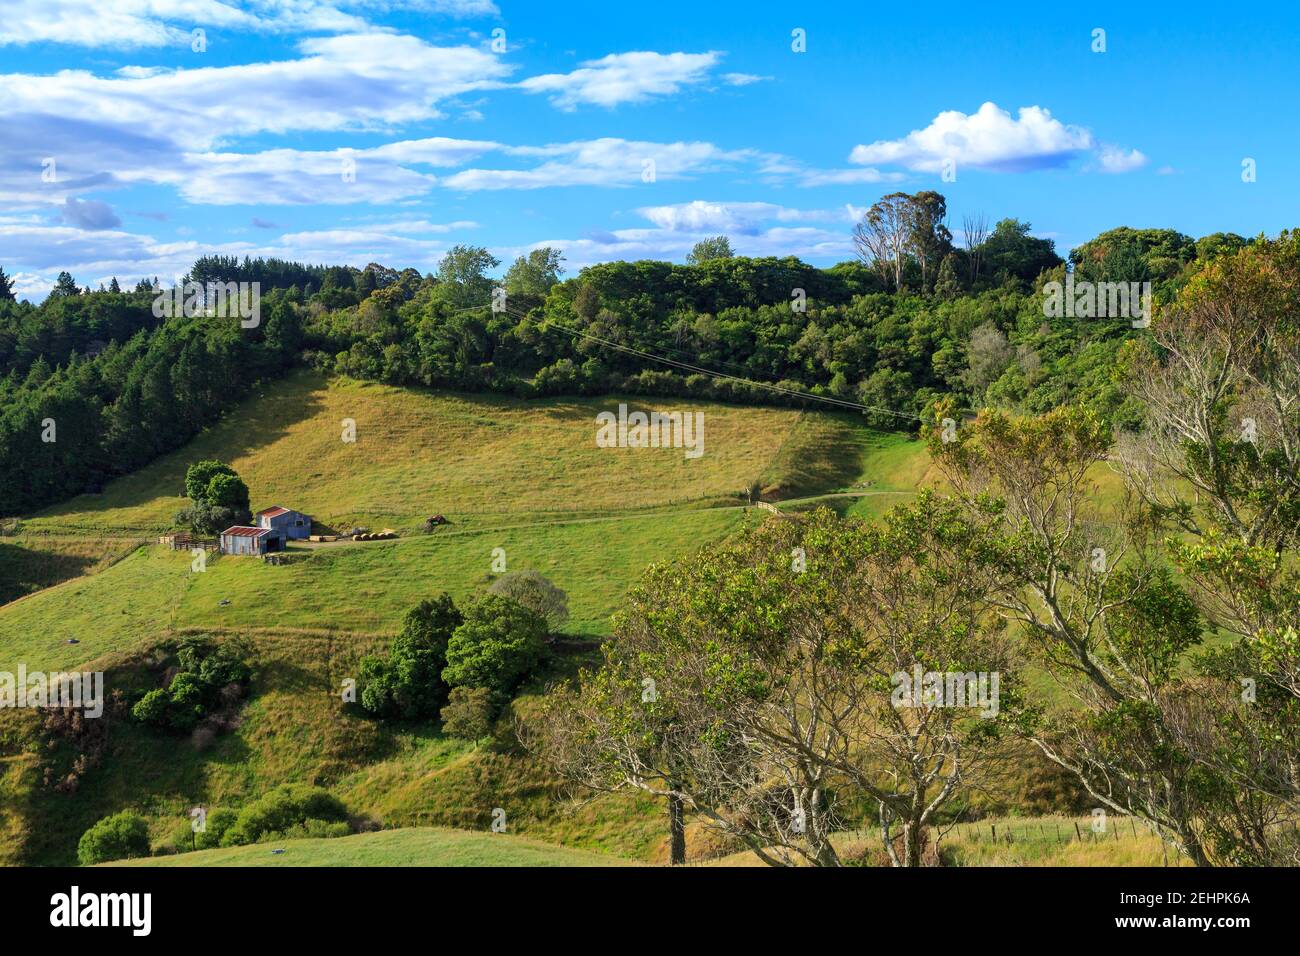 Ländliche Hügellandschaft in der Bay of Plenty, Neuseeland. Zwei Metallbarnen stehen in einer Landschaft aus Grasfeldern und Wäldern Stockfoto